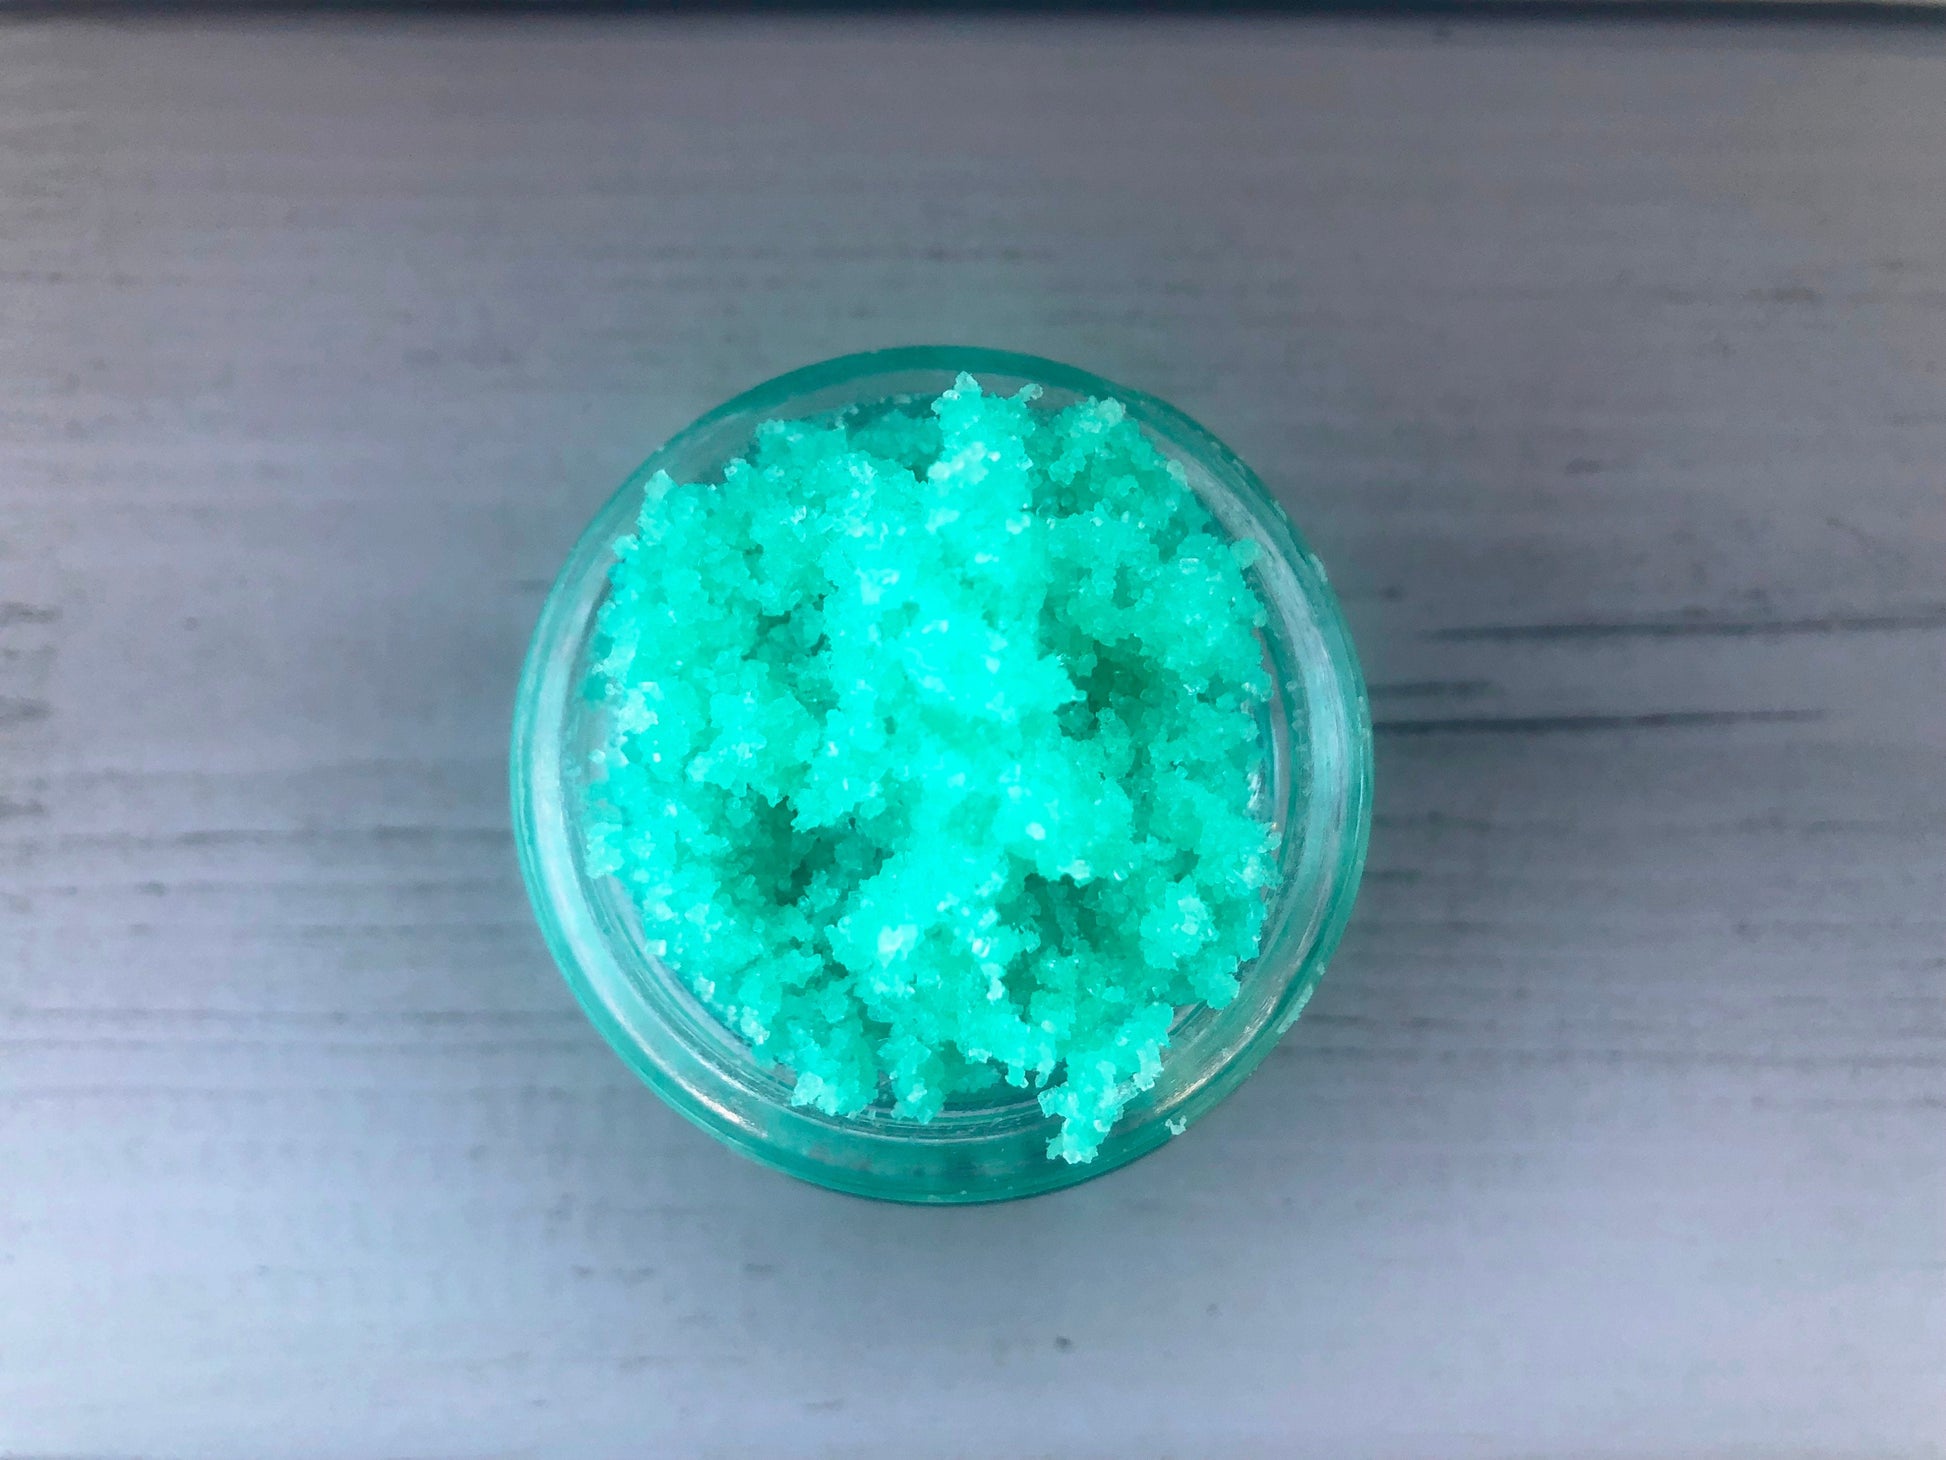 Green watermelon sugar lip scrub used for exfoliating in a glass jar